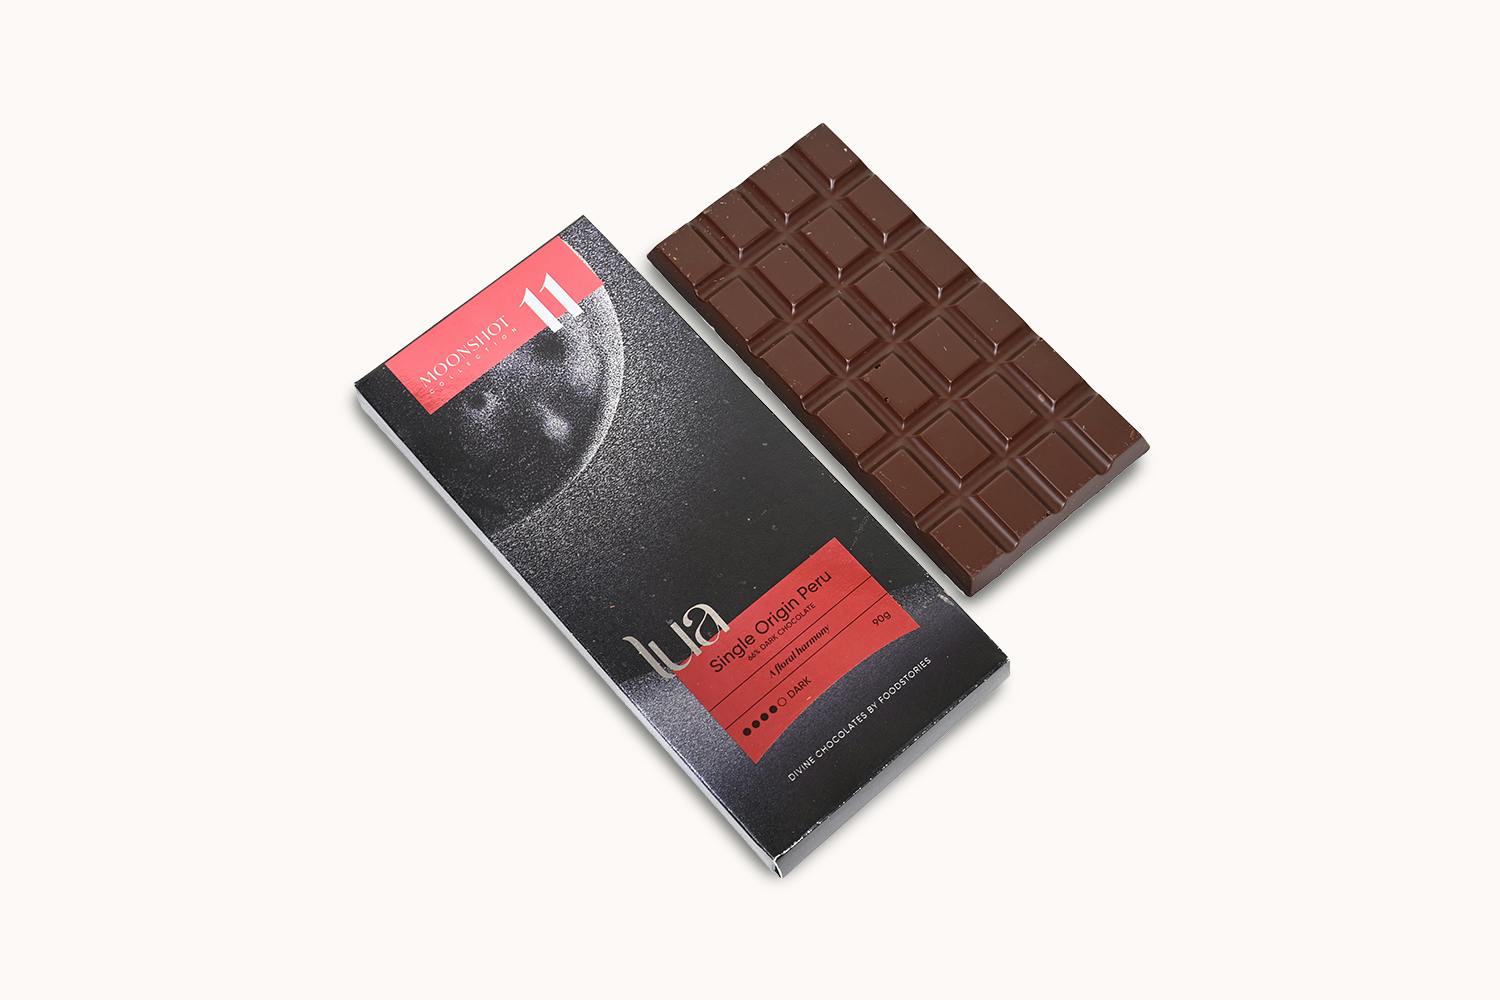 Lua Single Origin Peru 66% Dark Chocolate Bar